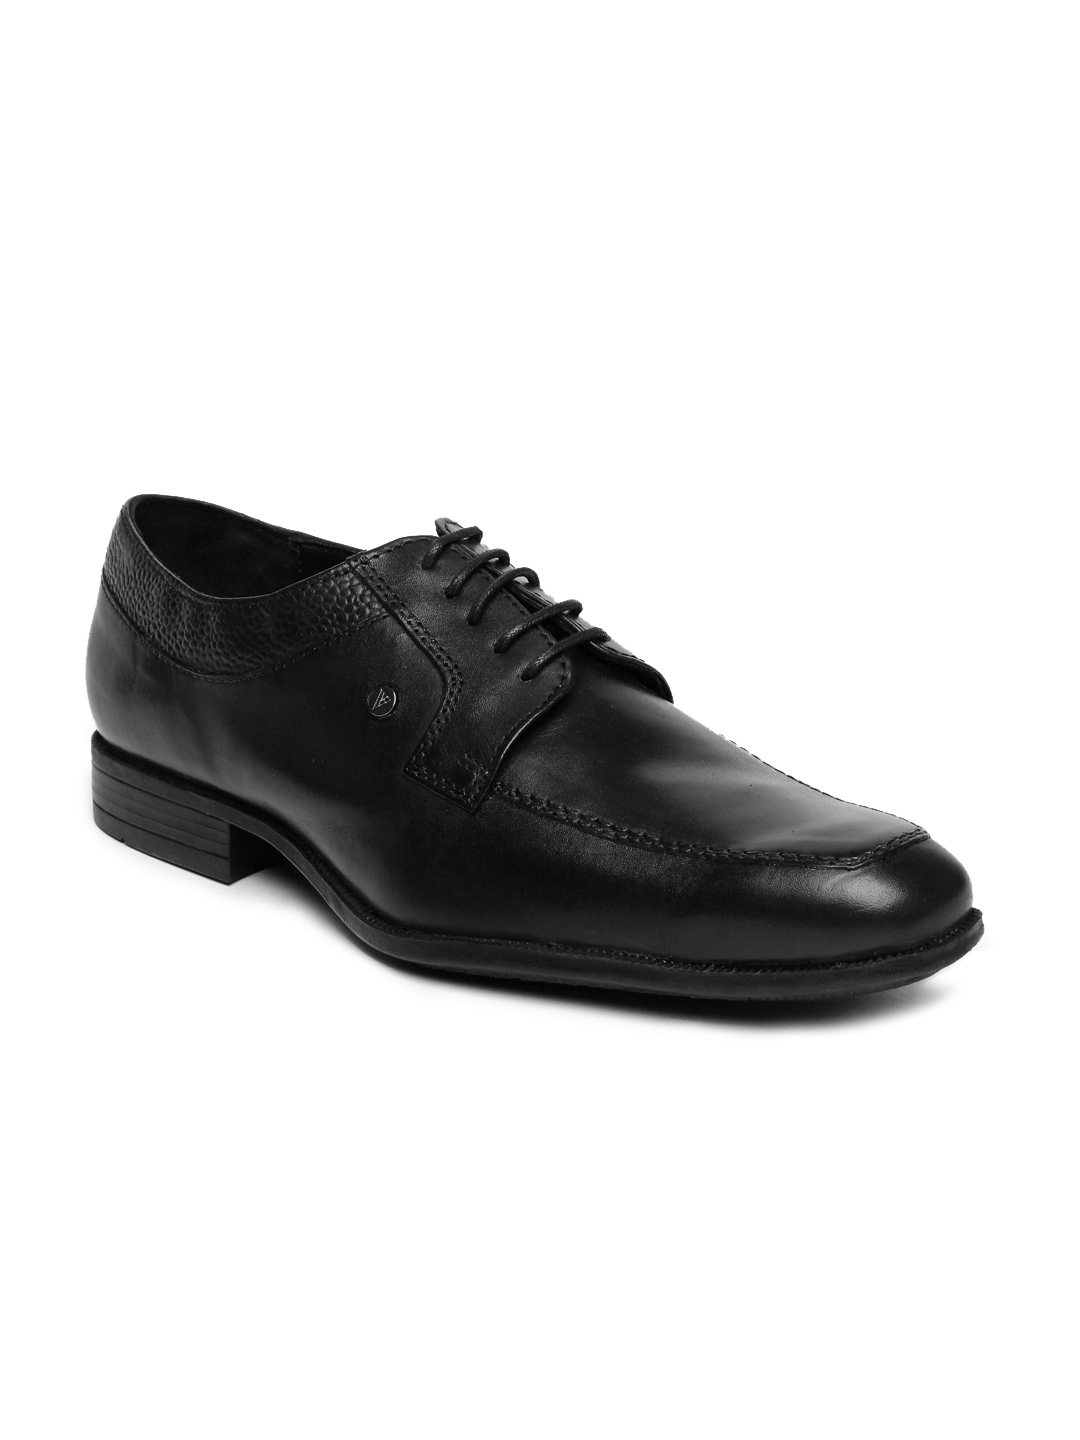 Buy Van Heusen Men Black Leather Derby Shoes - Formal Shoes for Men ...